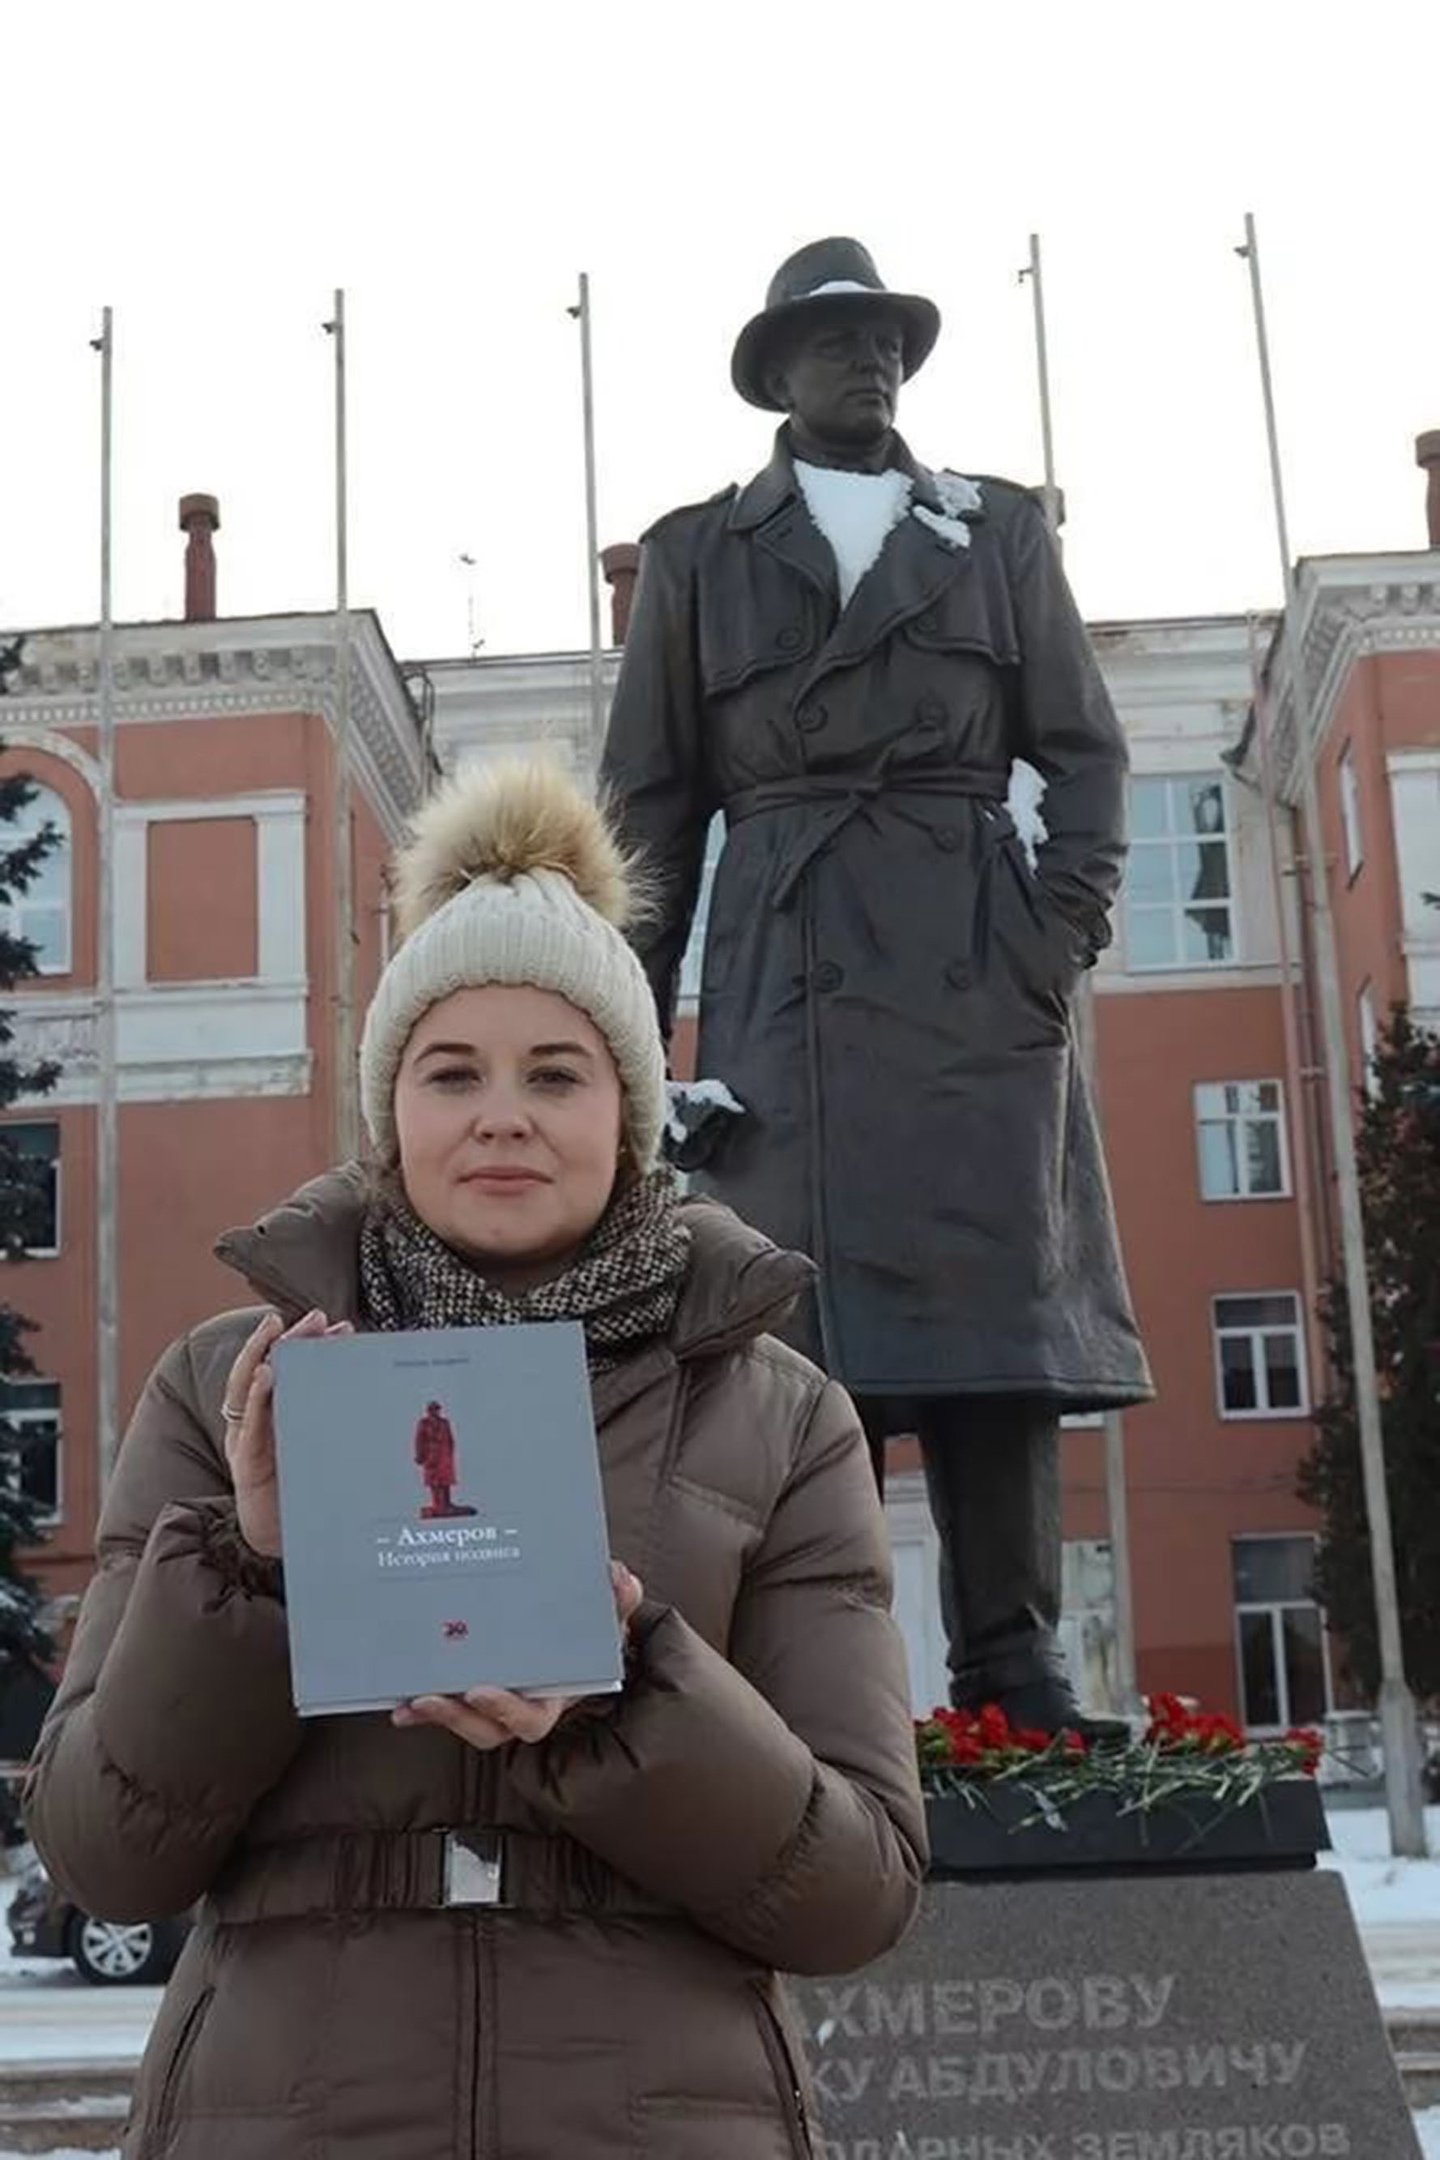 Правнучка Ахмерова Анна у памятника прадеду в Челябинске